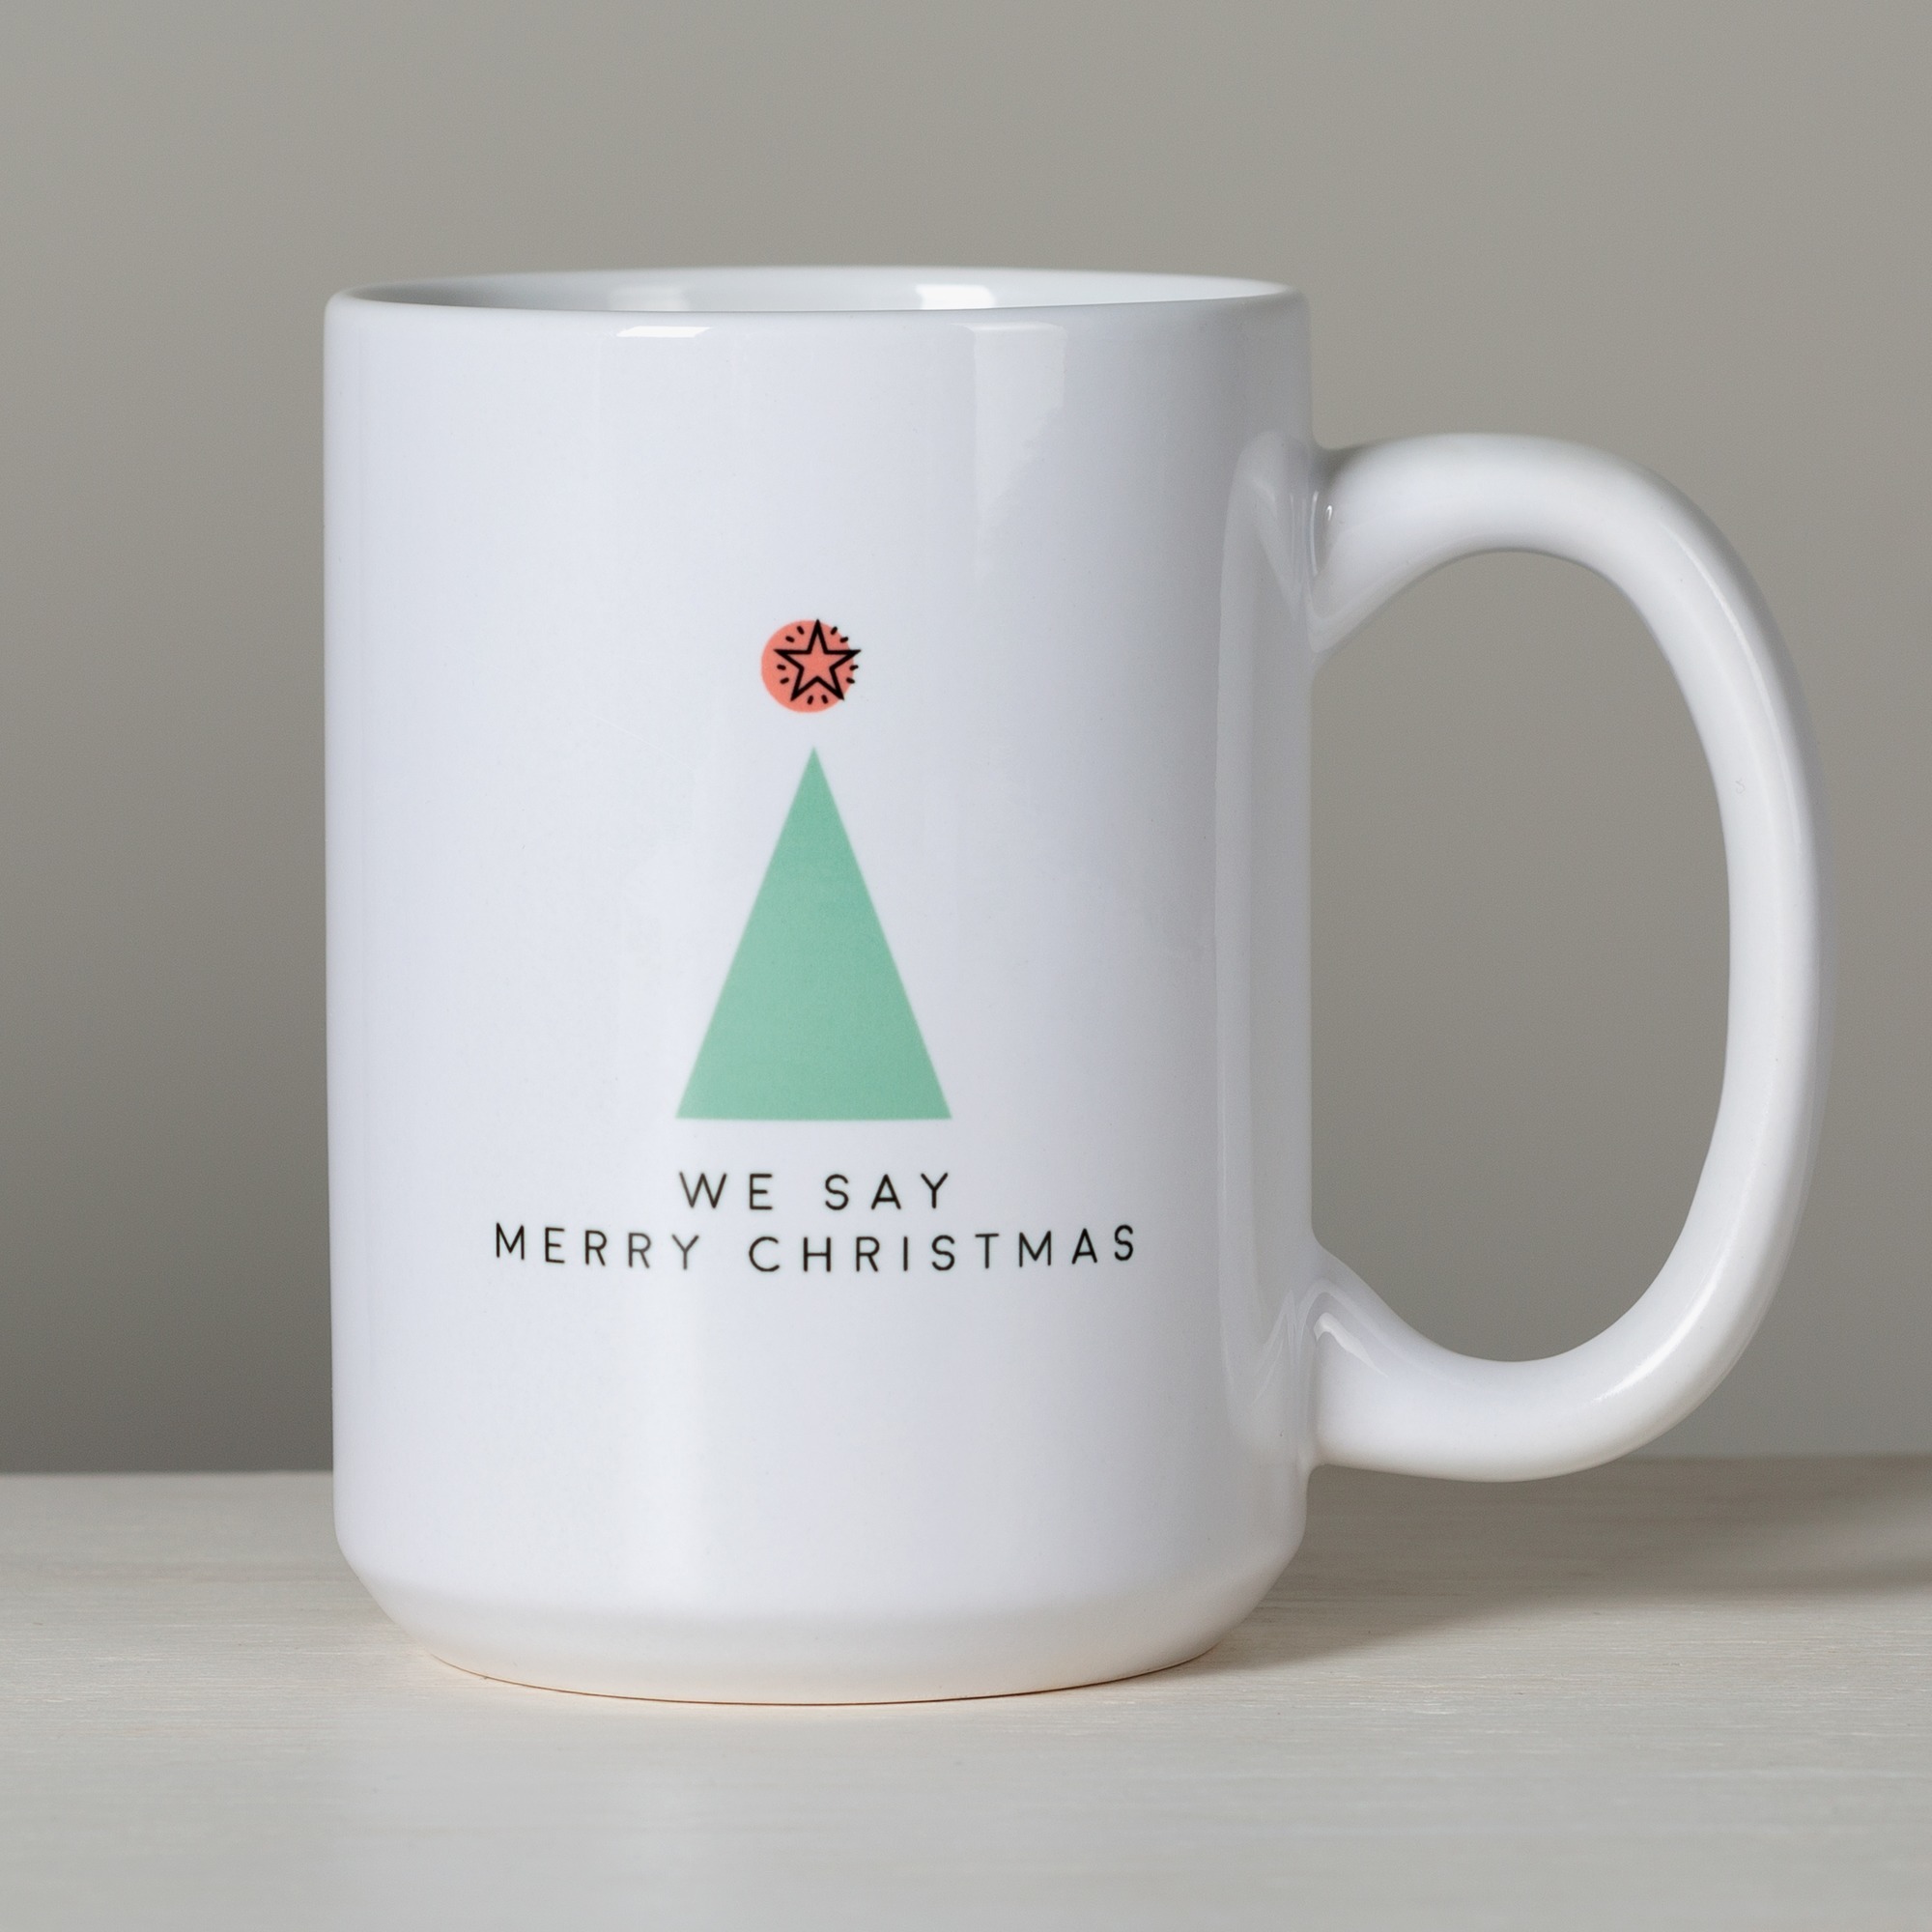 We Say Merry Christmas Mug The Catholic Company